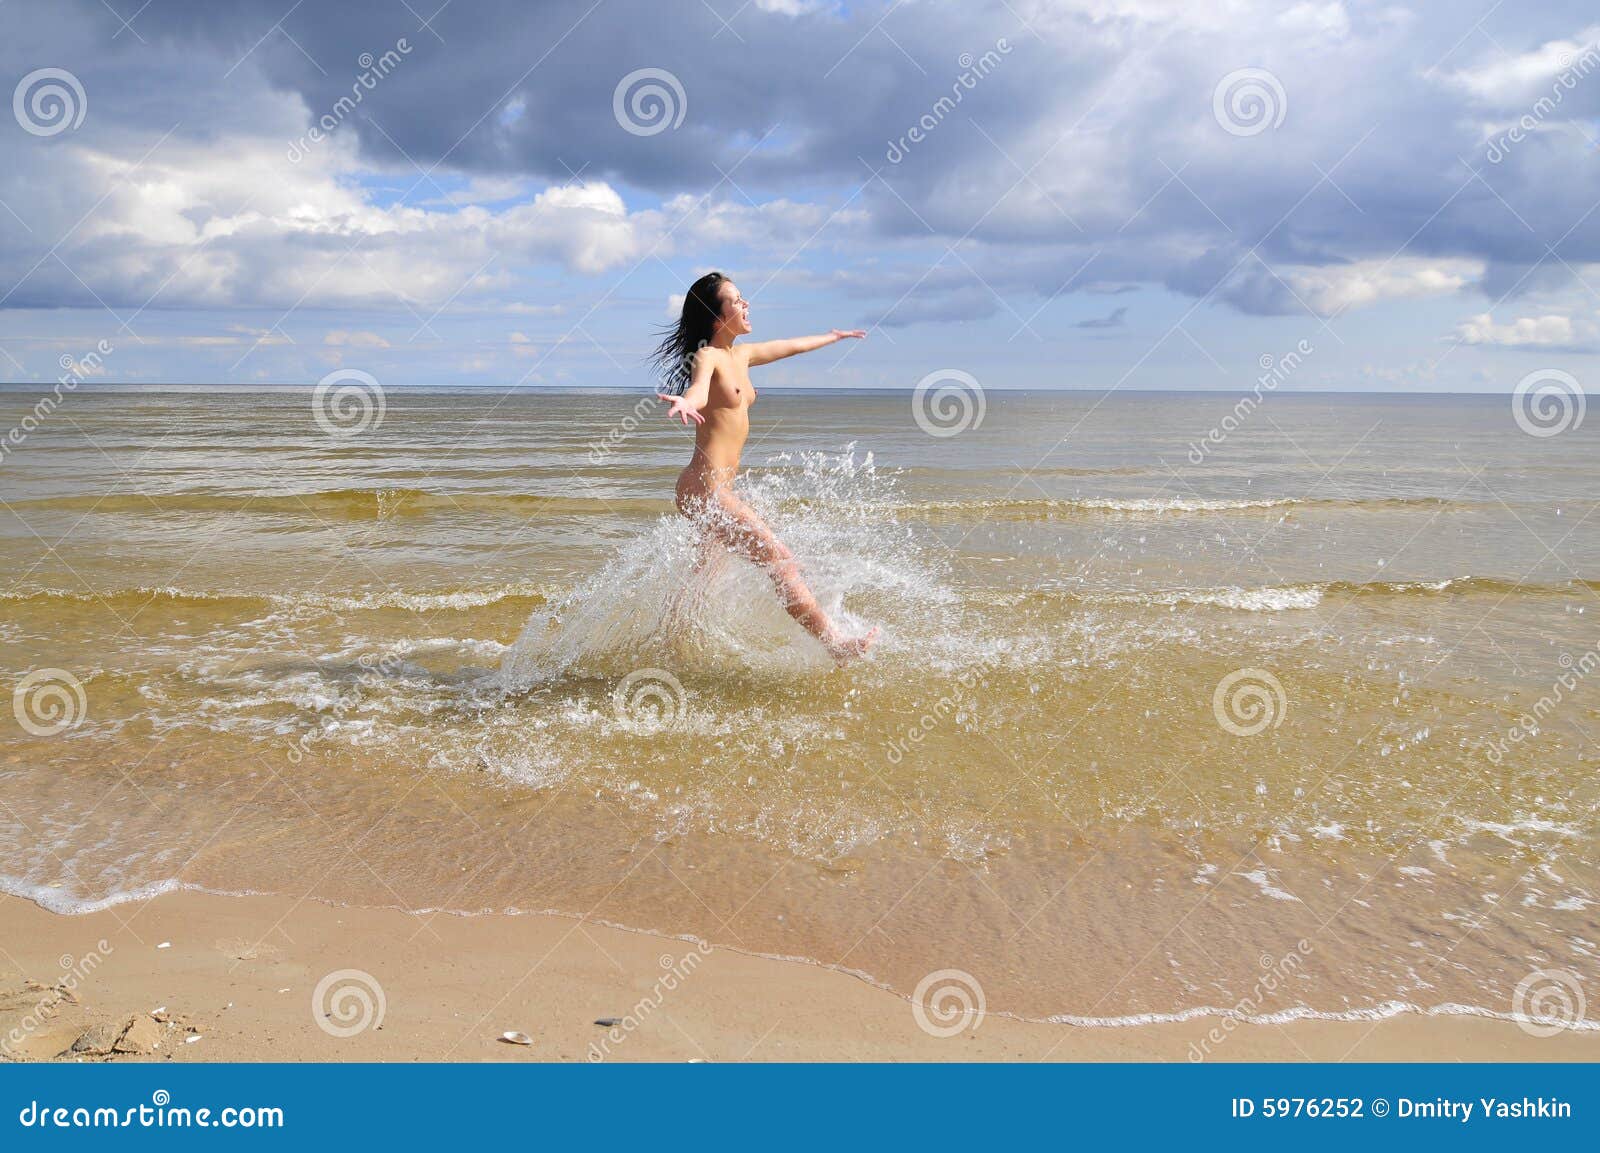 Nude girl running on beach